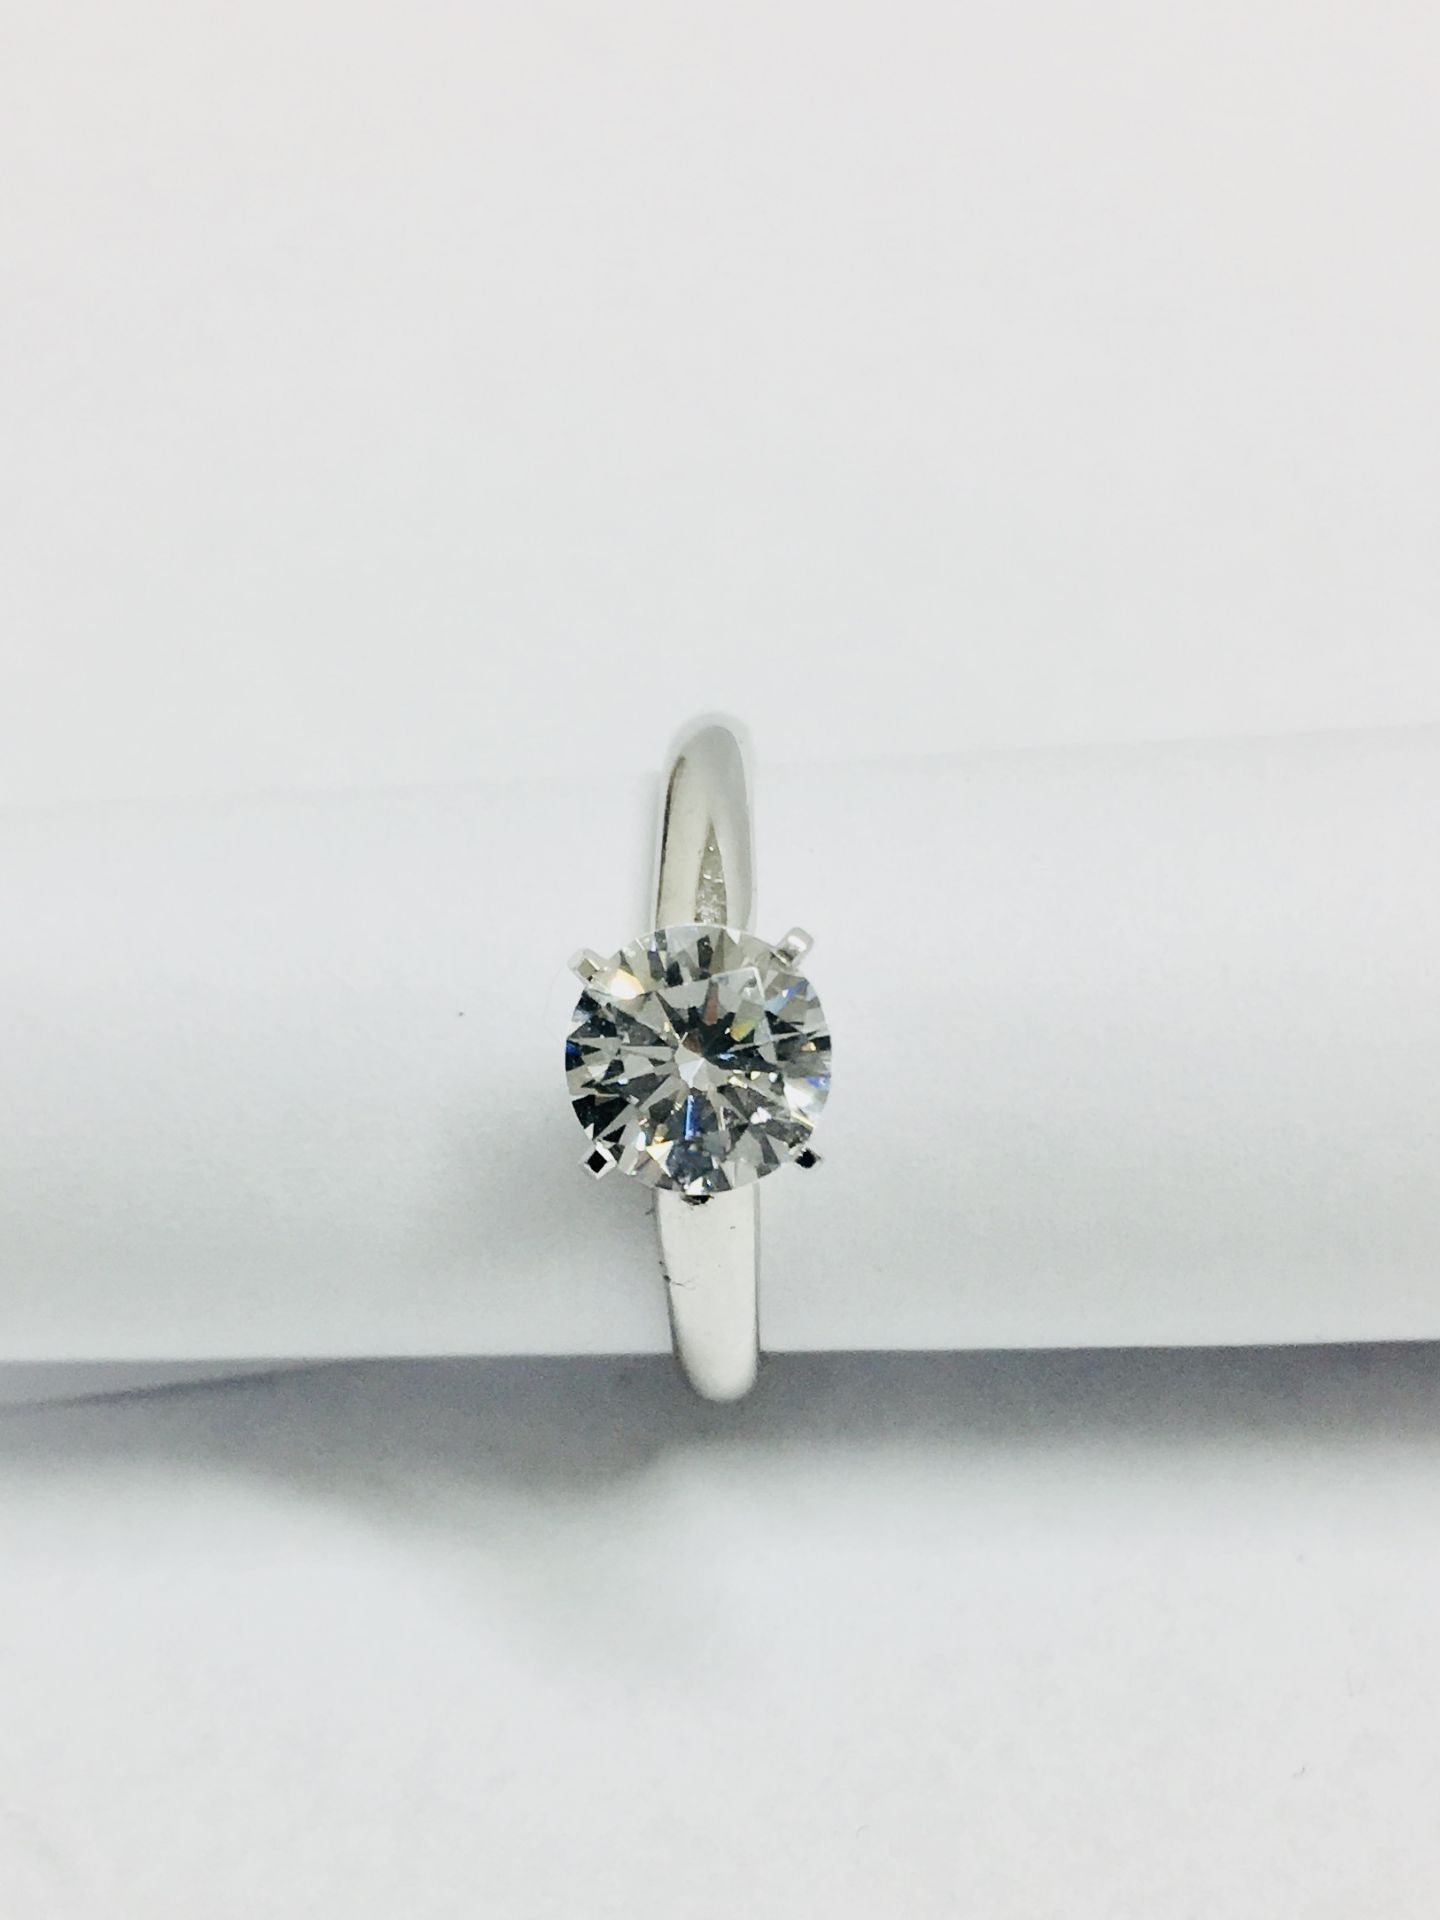 0.33ct diamond solitaire ring set in platinum . Brilliant cut diamond